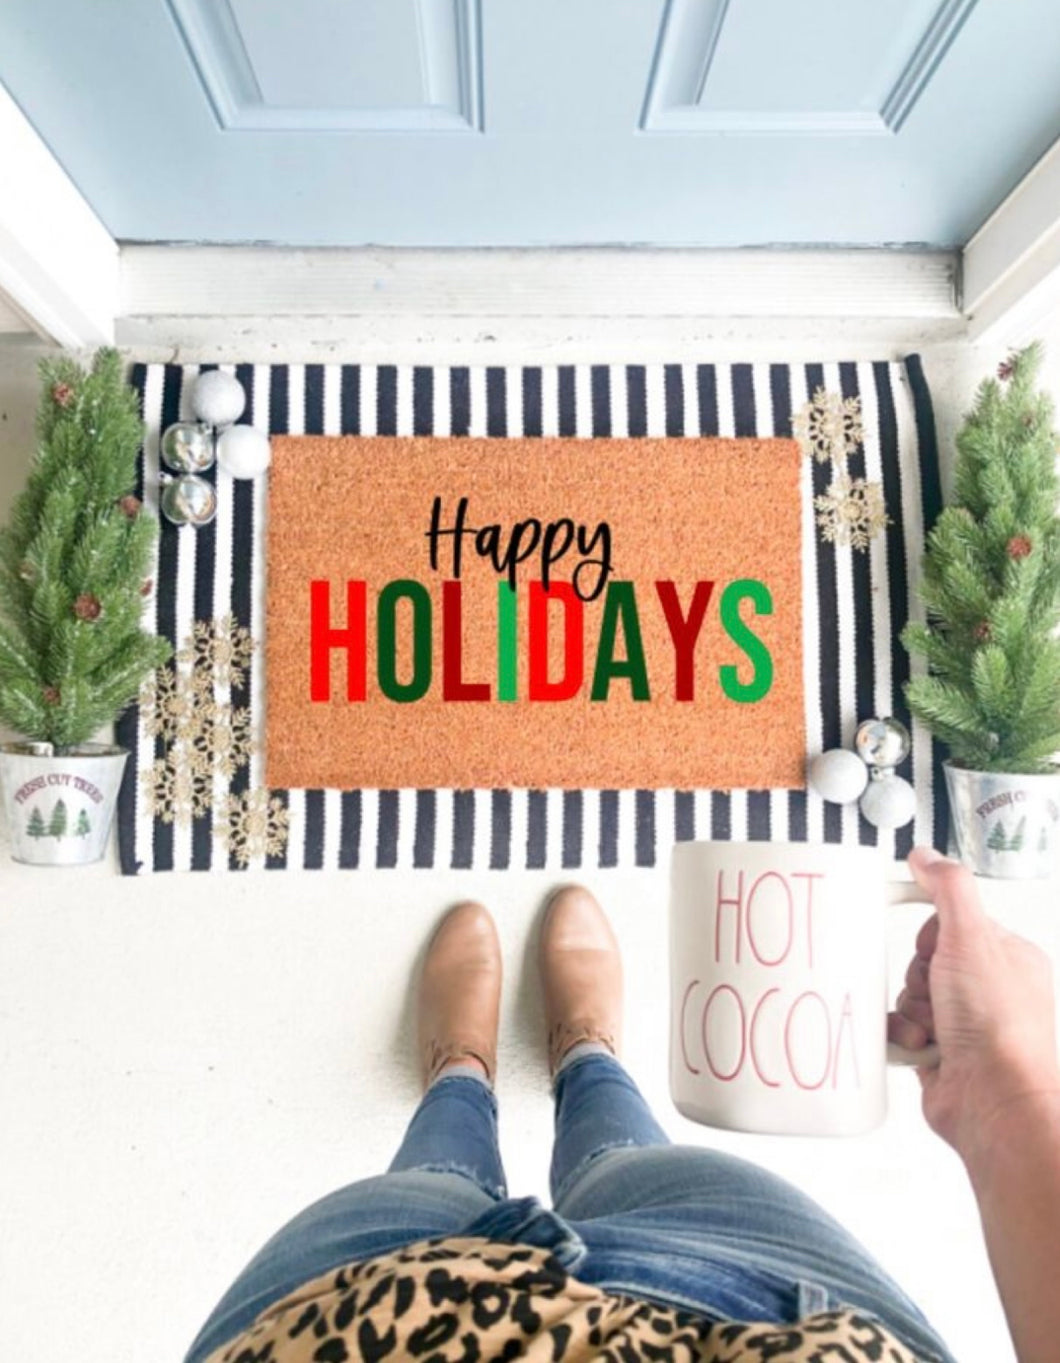 Happy holidays doormat DIY at home kit